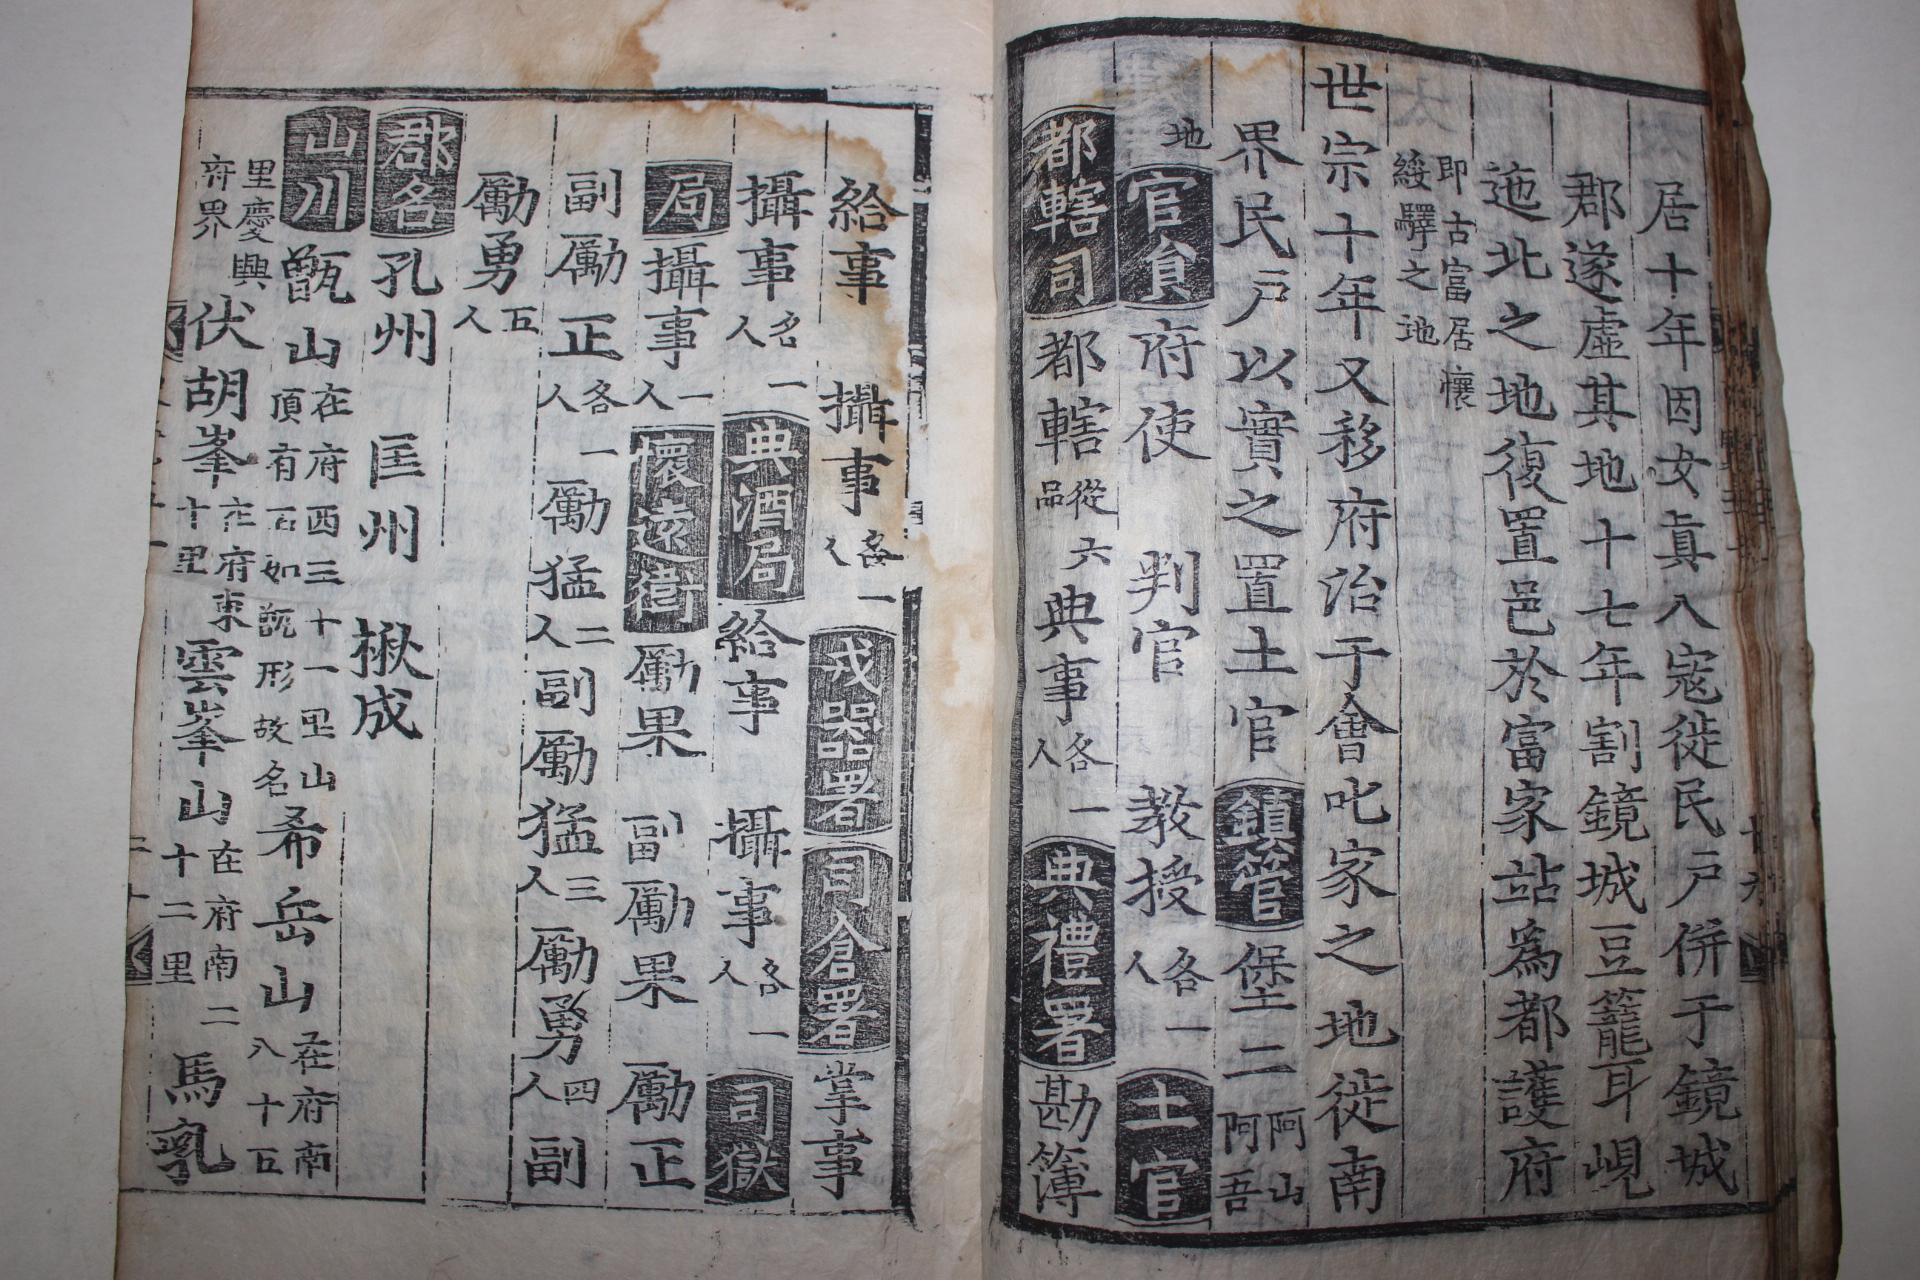 1611년 목판본 신증동국여지승람(新增東國與地勝覽)권50,51  1책(함경도편)